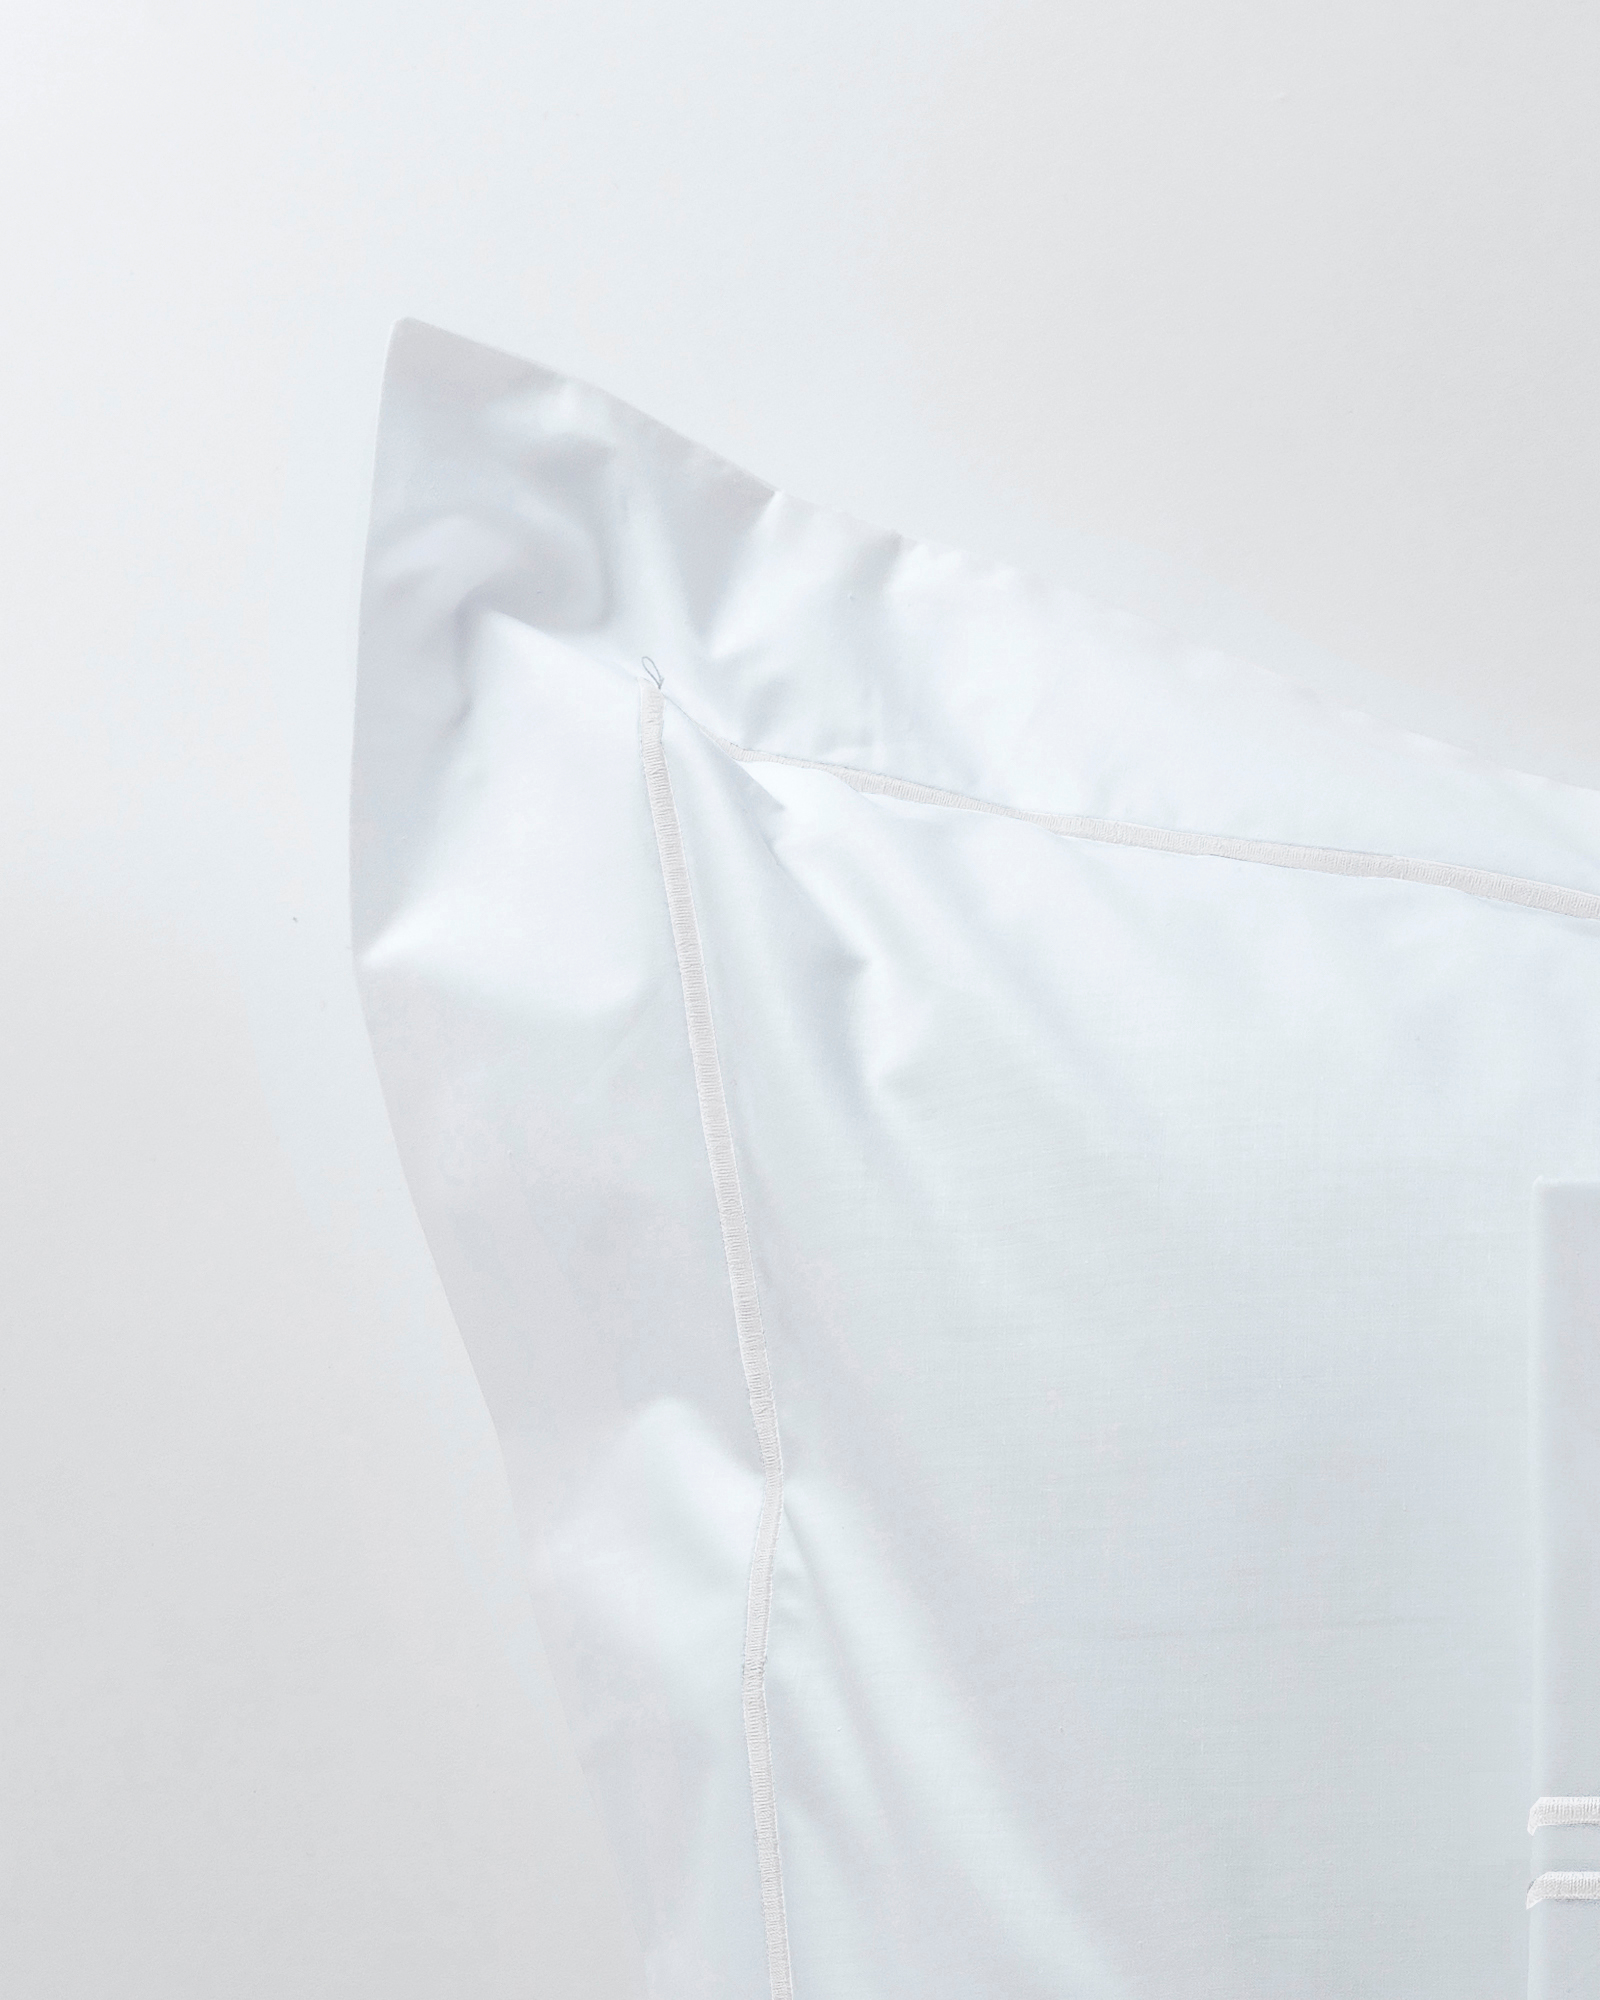 MARIE-MARIE - Pillowcase OXFORD - 65x65 cm - White